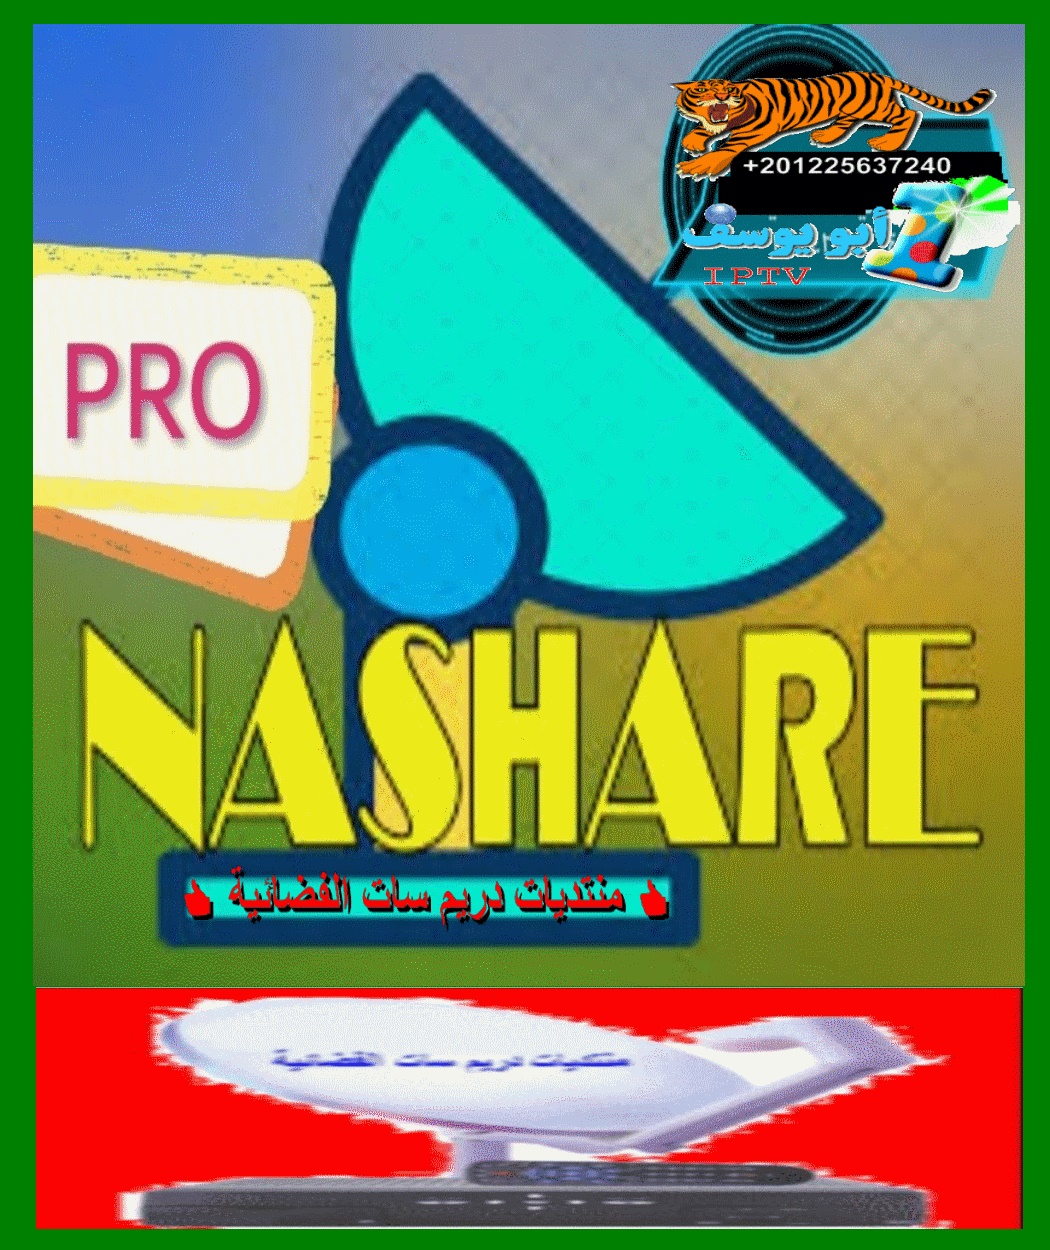 تجميعه لكل السوفتات لسيرفر nashare pro لتحسين الاداء بتاريخ اليوم 18-12-2019 P_14475vhas1